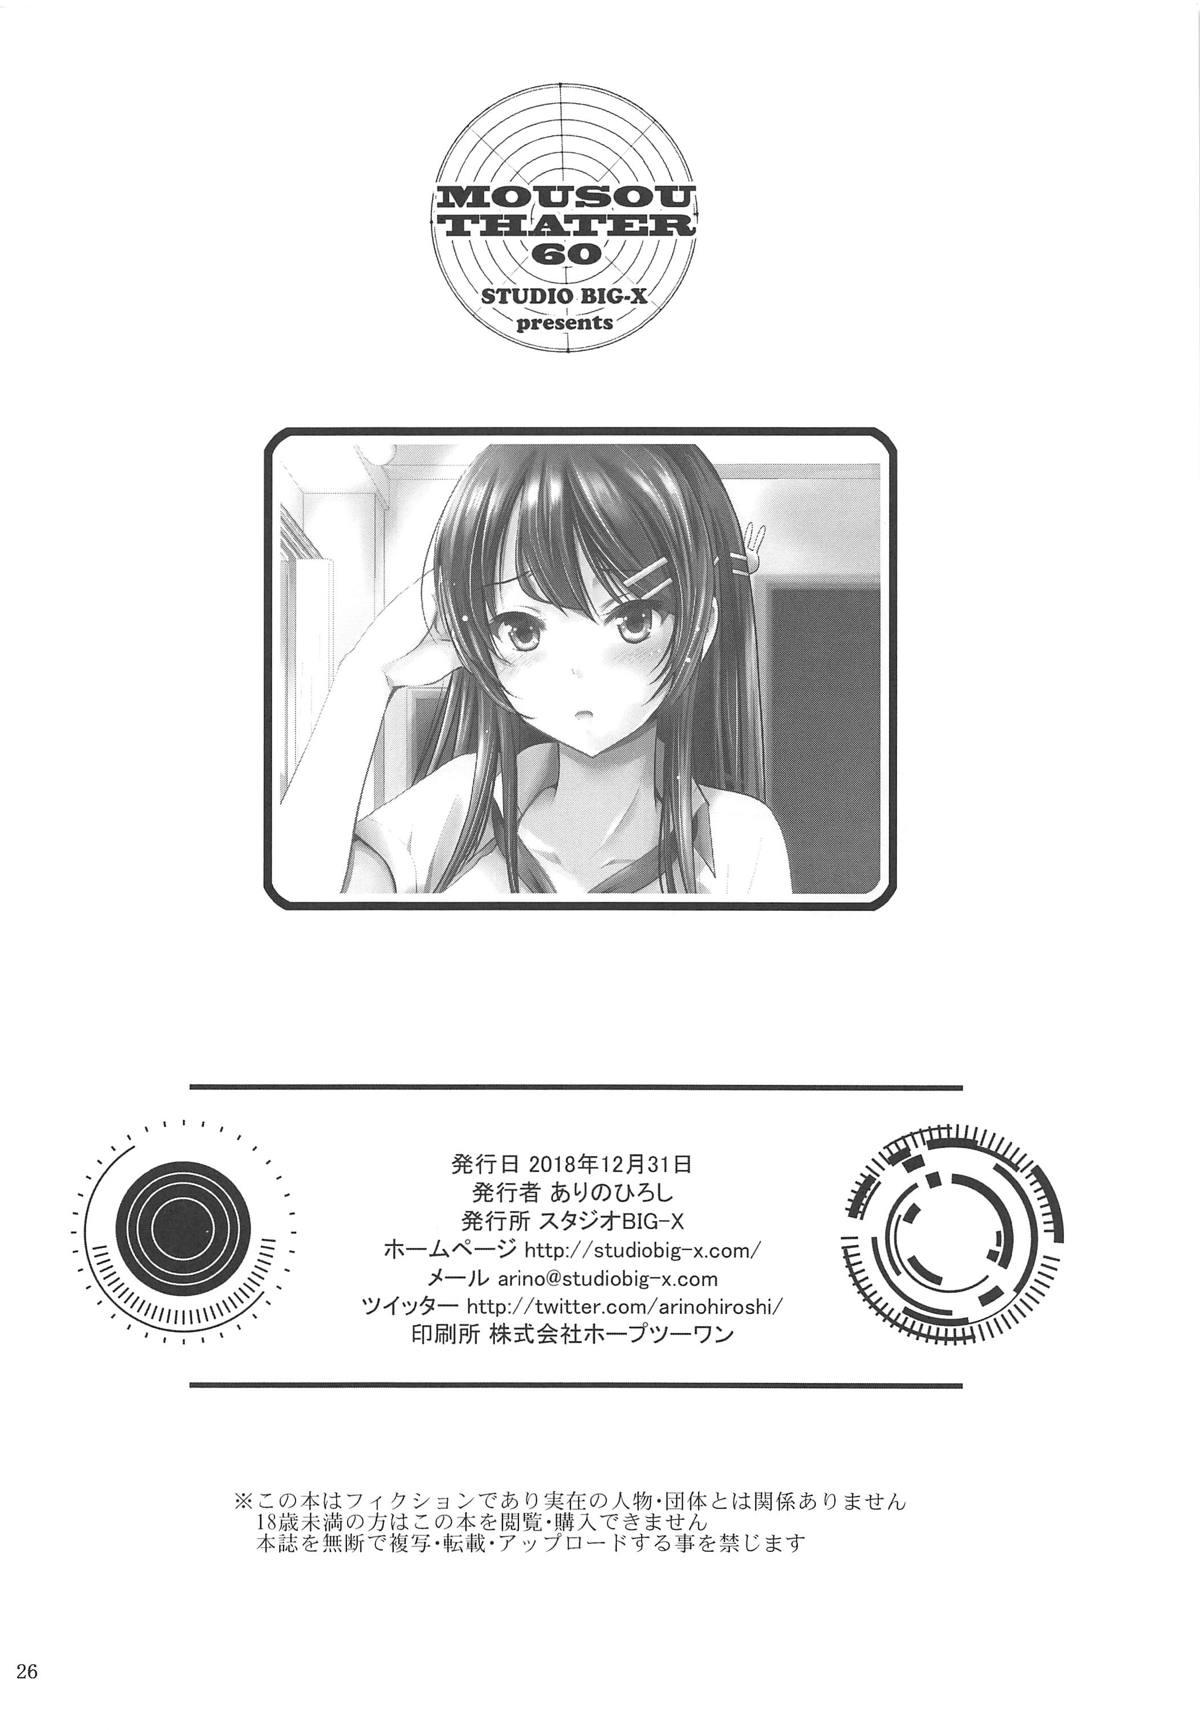 Scene MOUSOU THEATER 60 - Seishun buta yarou wa bunny girl senpai no yume o minai Free Hard Core Porn - Page 25